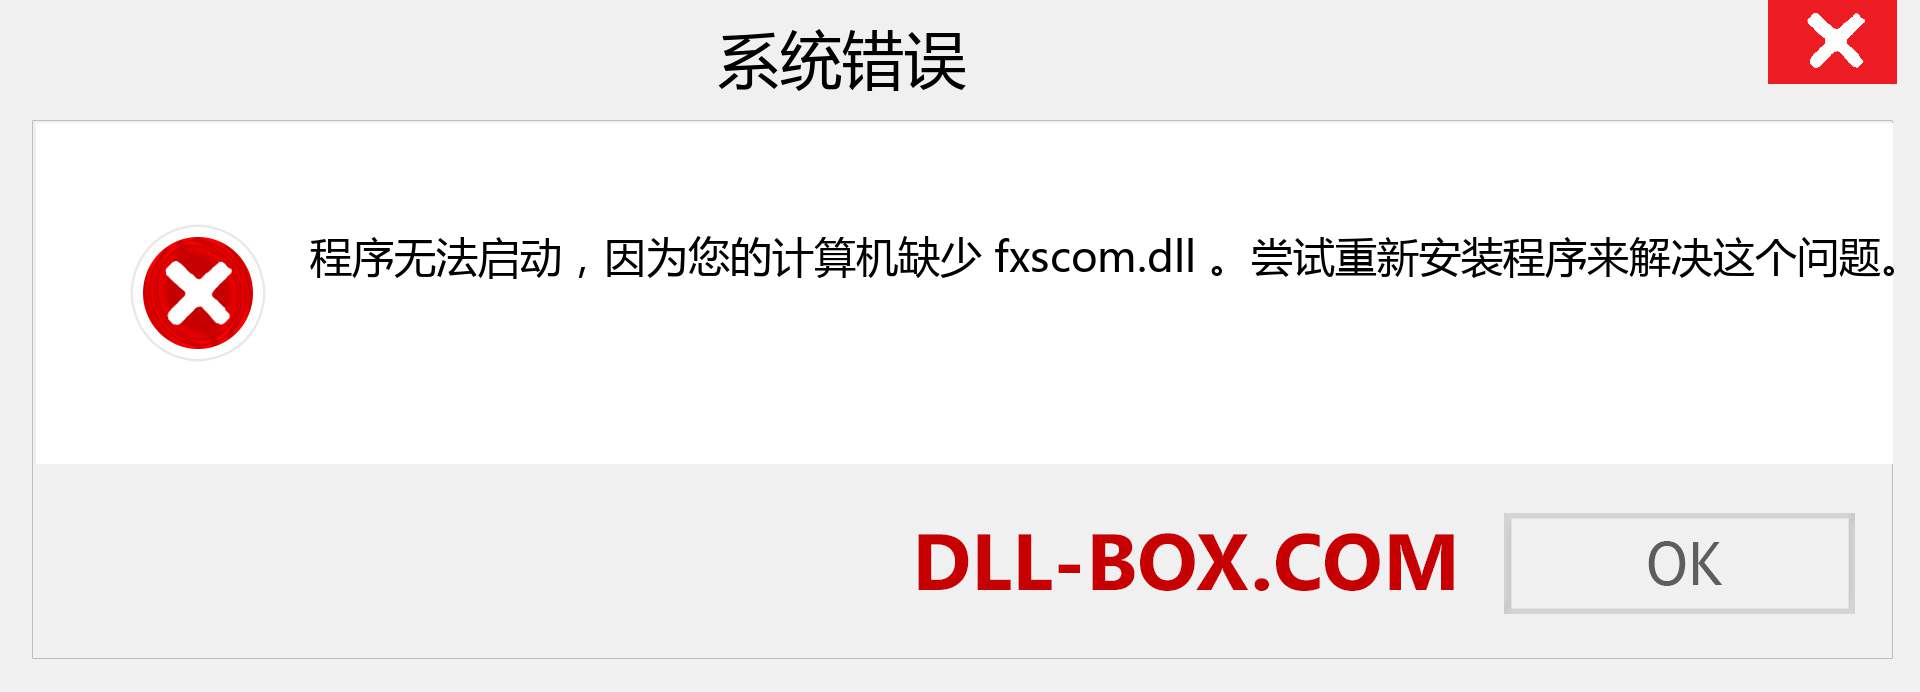 fxscom.dll 文件丢失？。 适用于 Windows 7、8、10 的下载 - 修复 Windows、照片、图像上的 fxscom dll 丢失错误